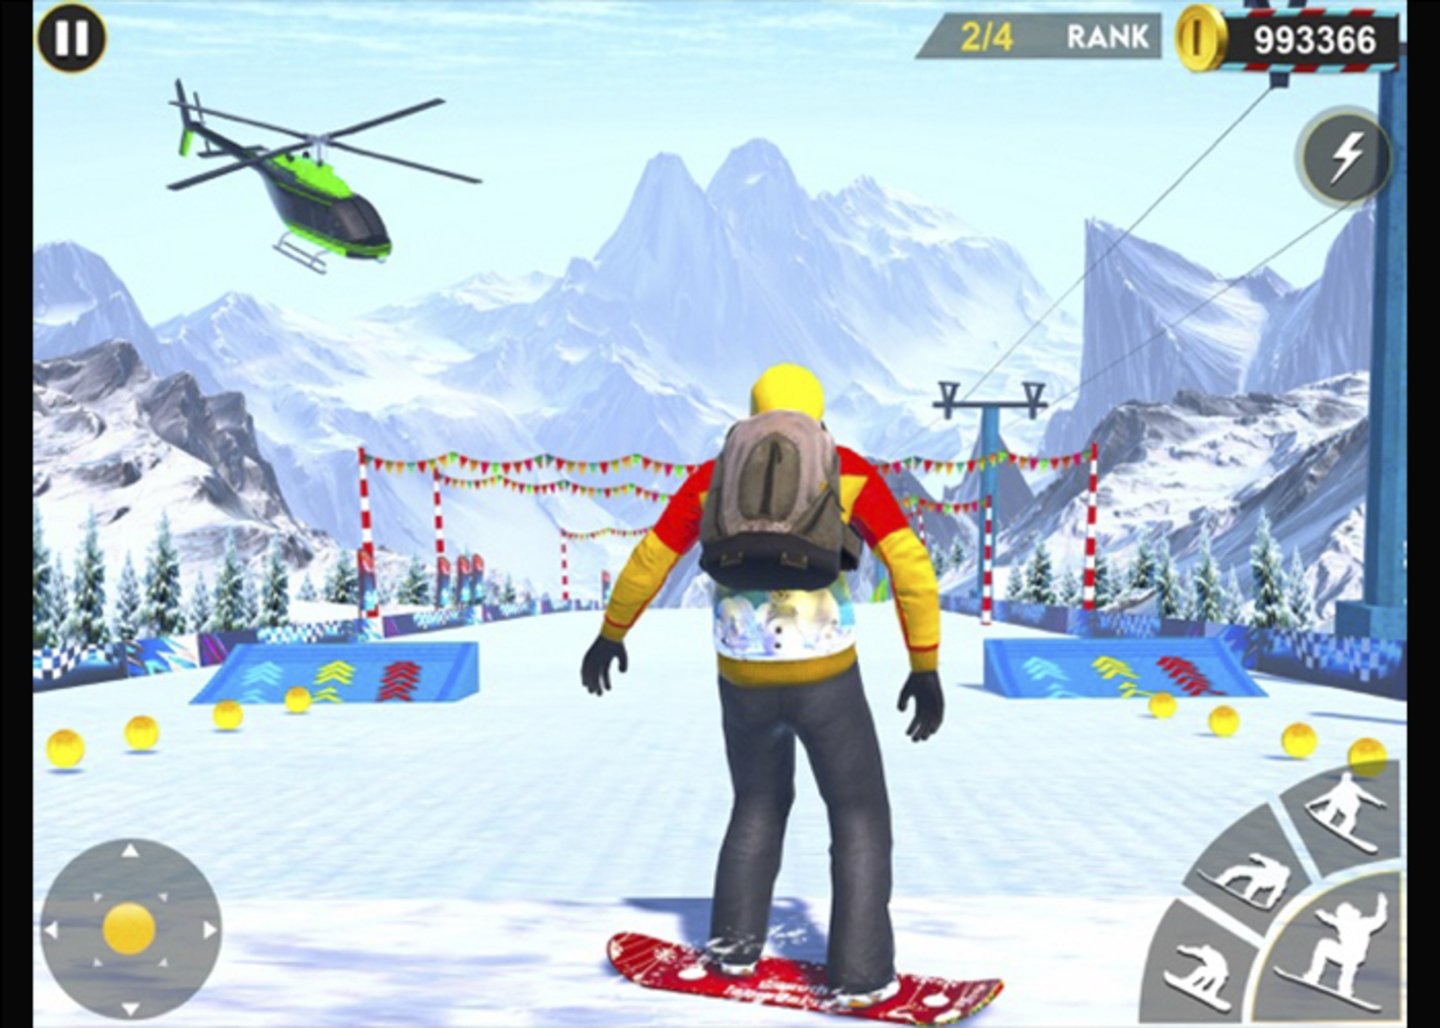 Conviertete en el rey de la montaña - patinar Snowboard te desafia a conquistar los juegos de invierno